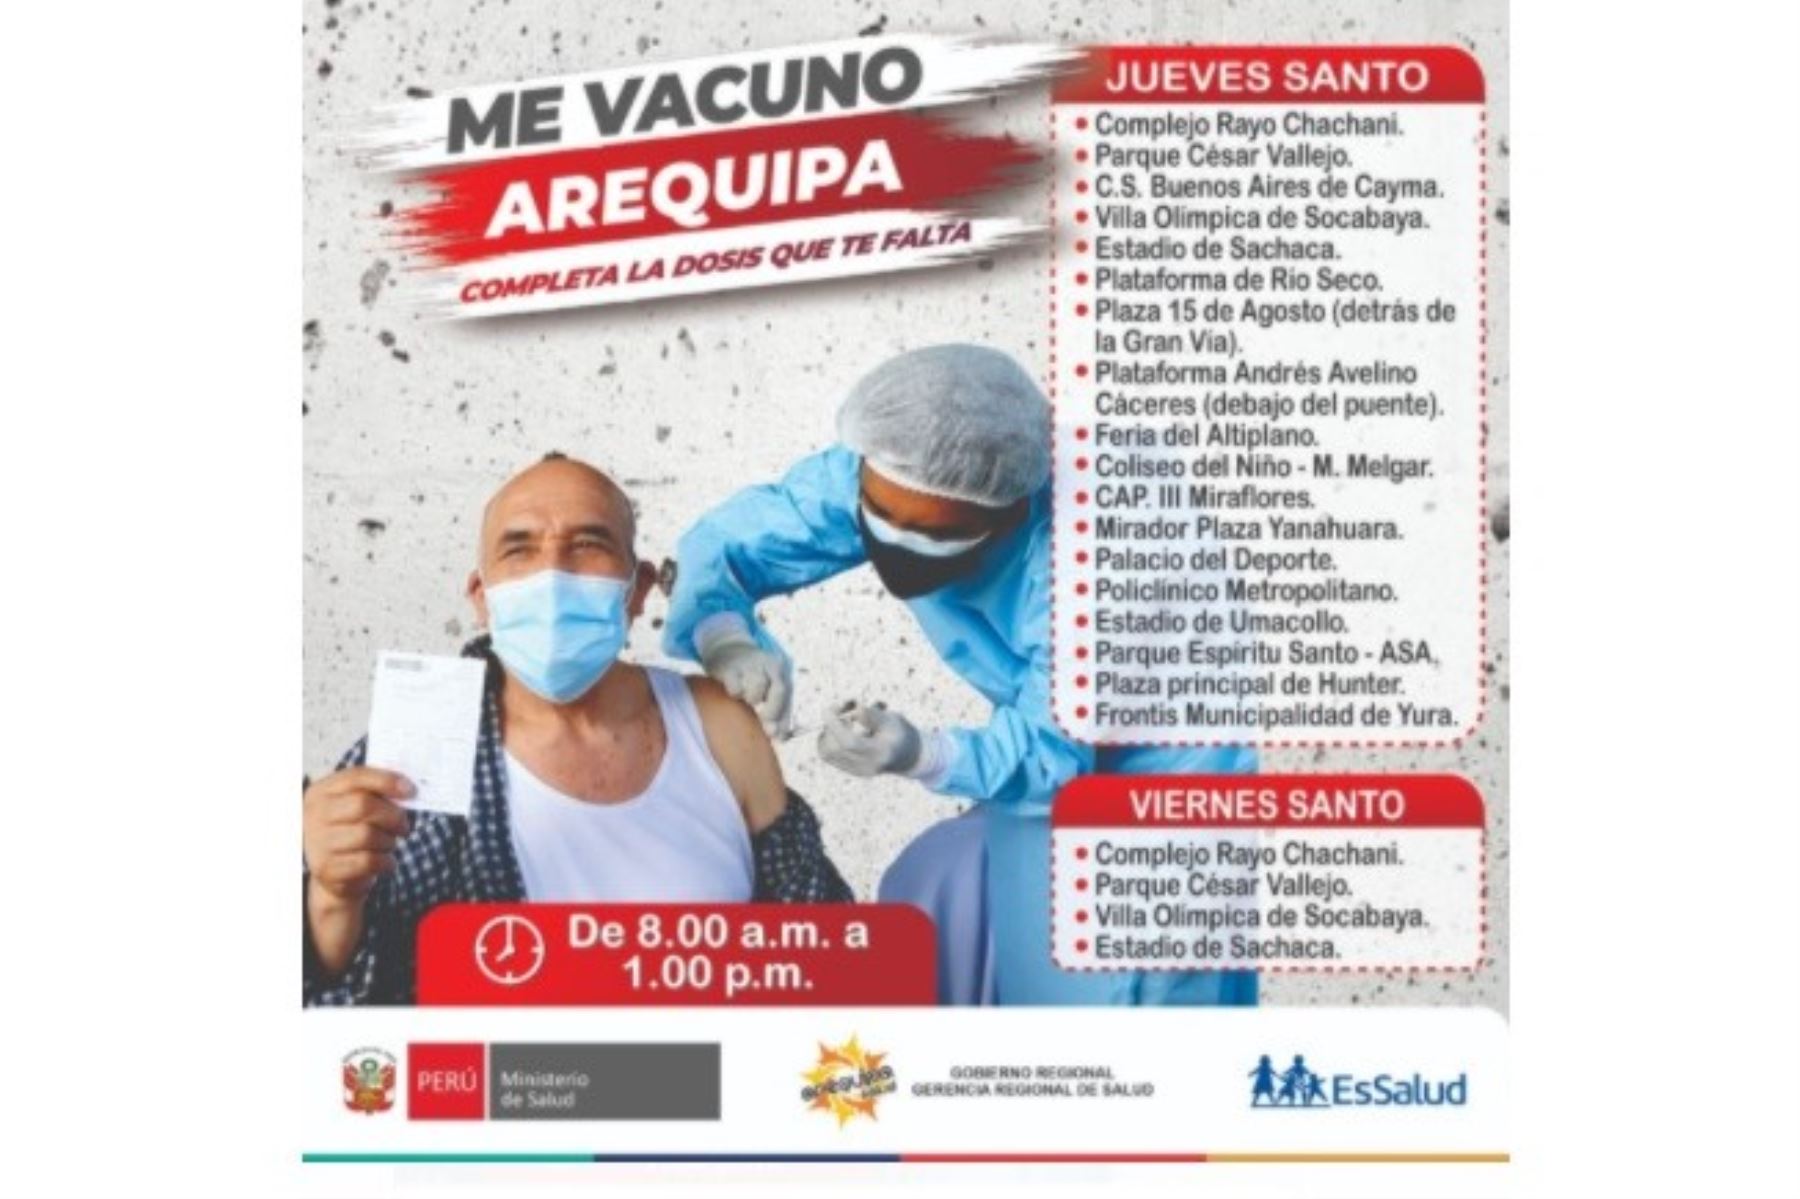 Pieza informativa sobre puntos de vacunación covid-19 en Arequipa durante Semana Santa.